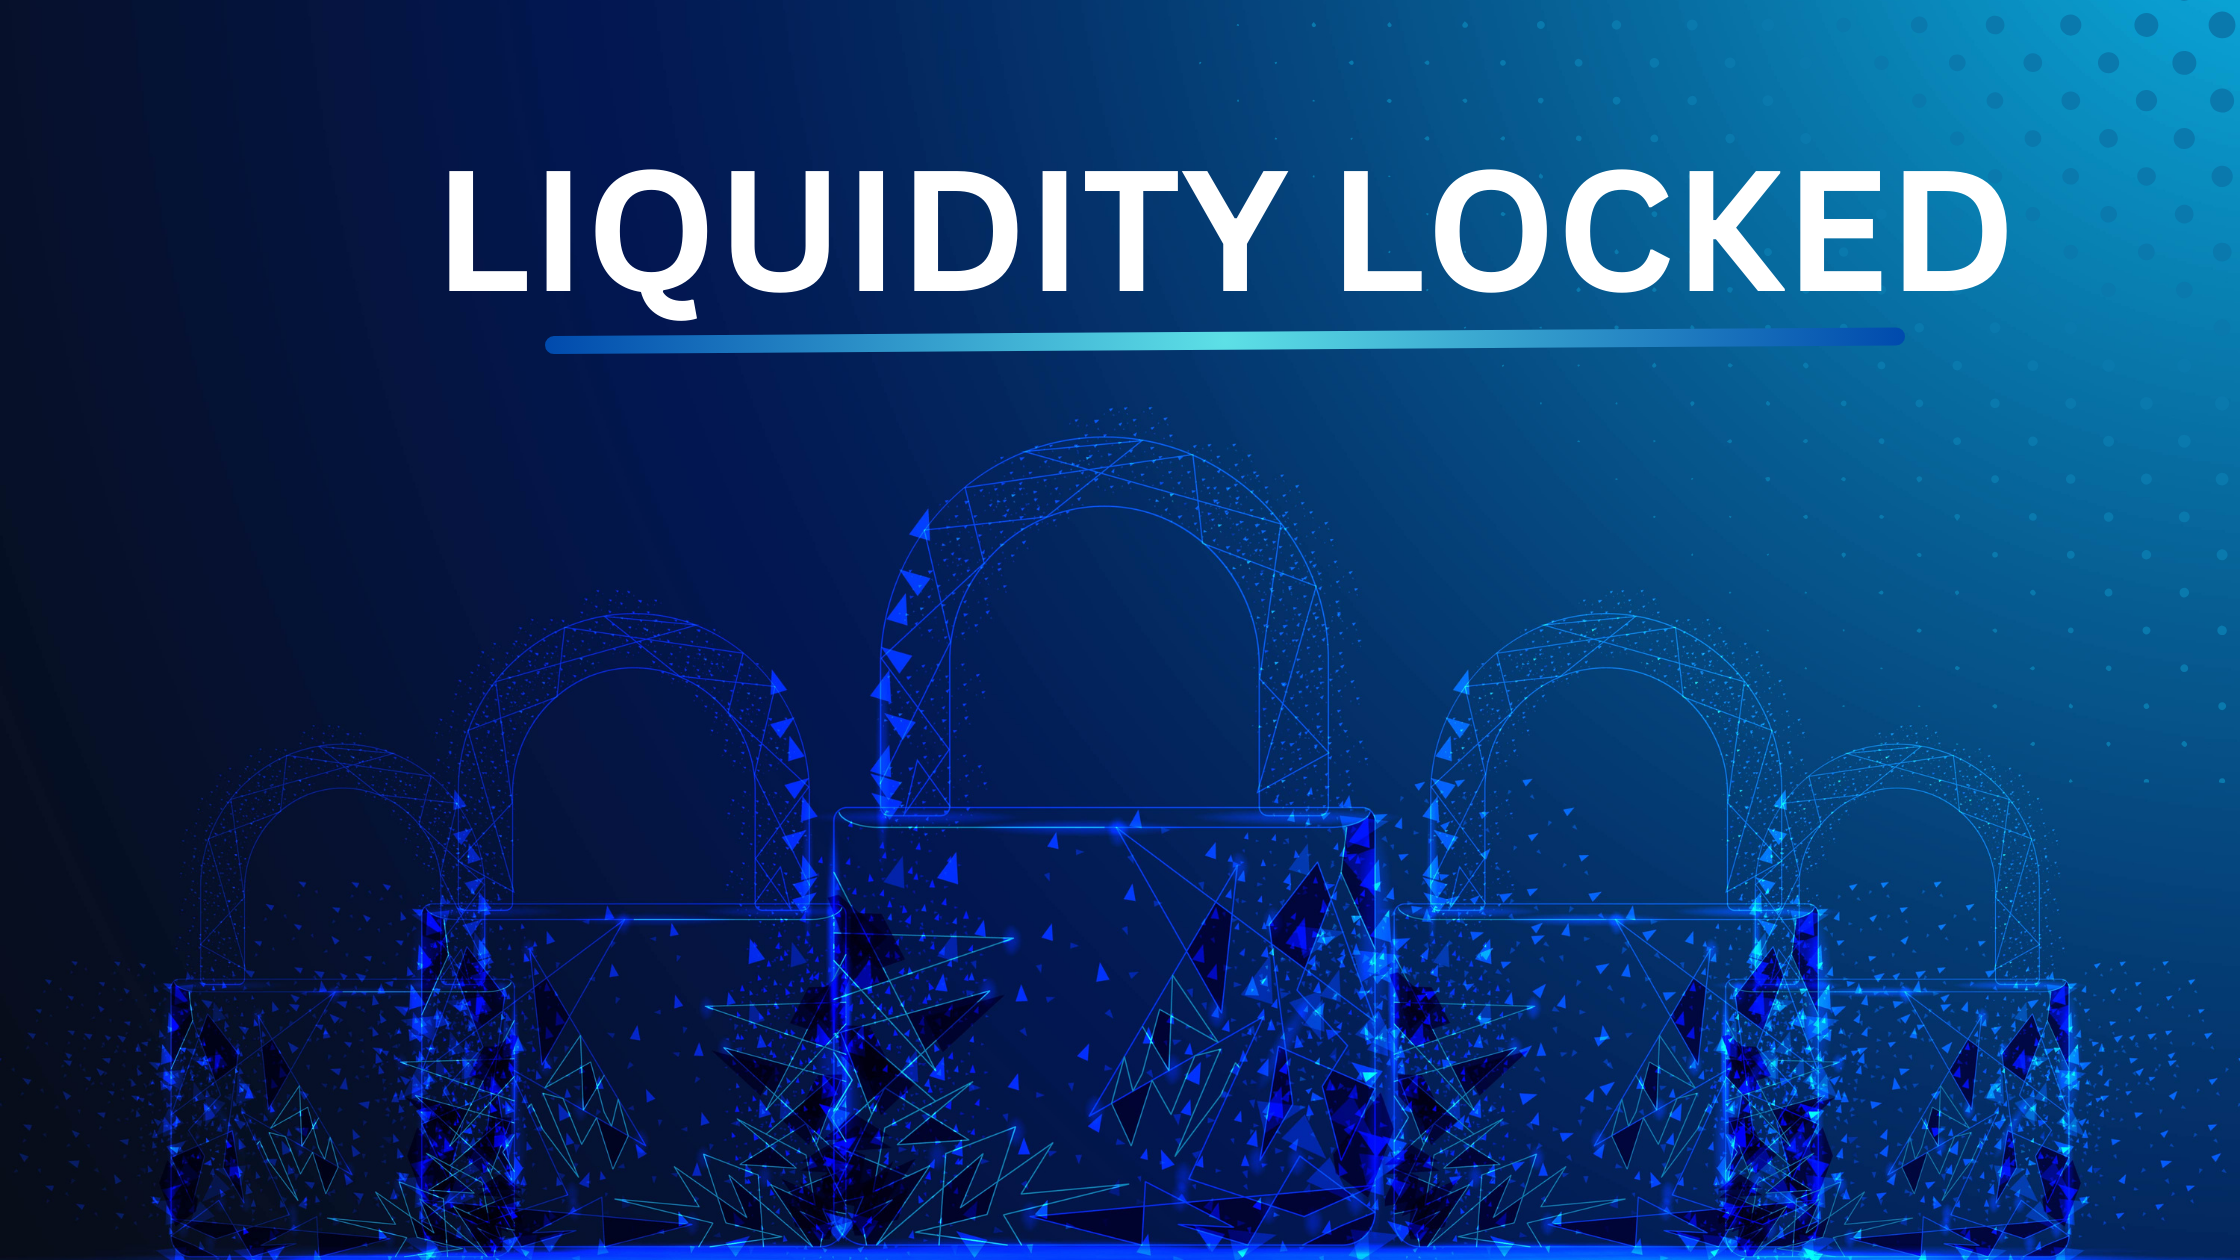 Какая ликвидность заблокирована в криптовалюте? Хорошо ли блокировать ликвидность?